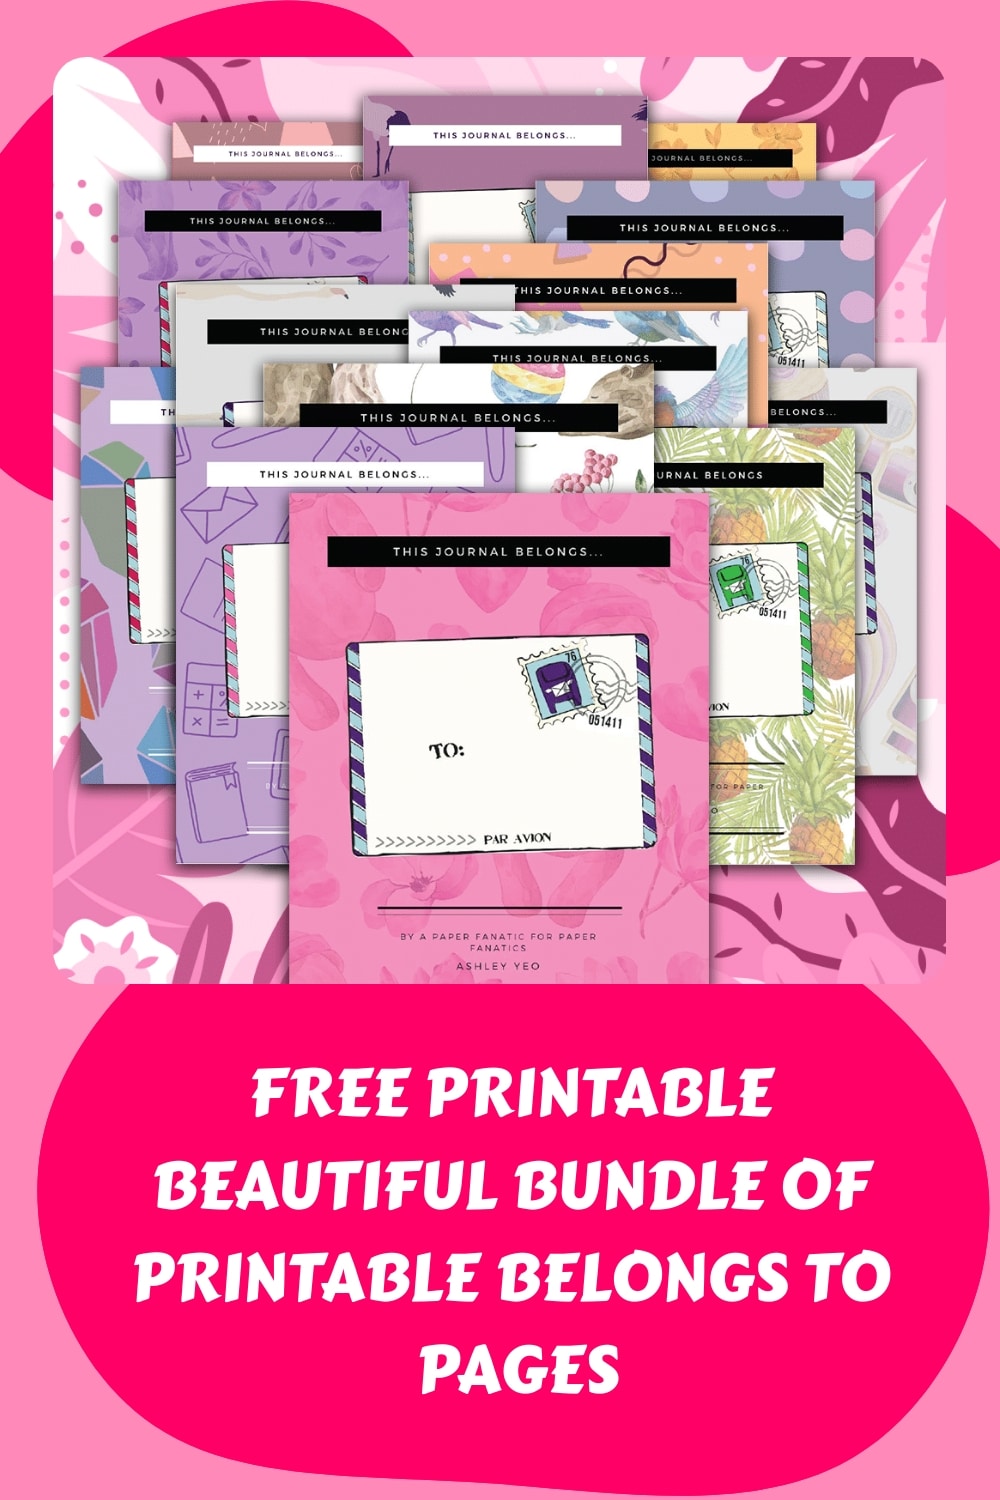 Free Printable Beautiful Bundle of Printable Belongs to Pages